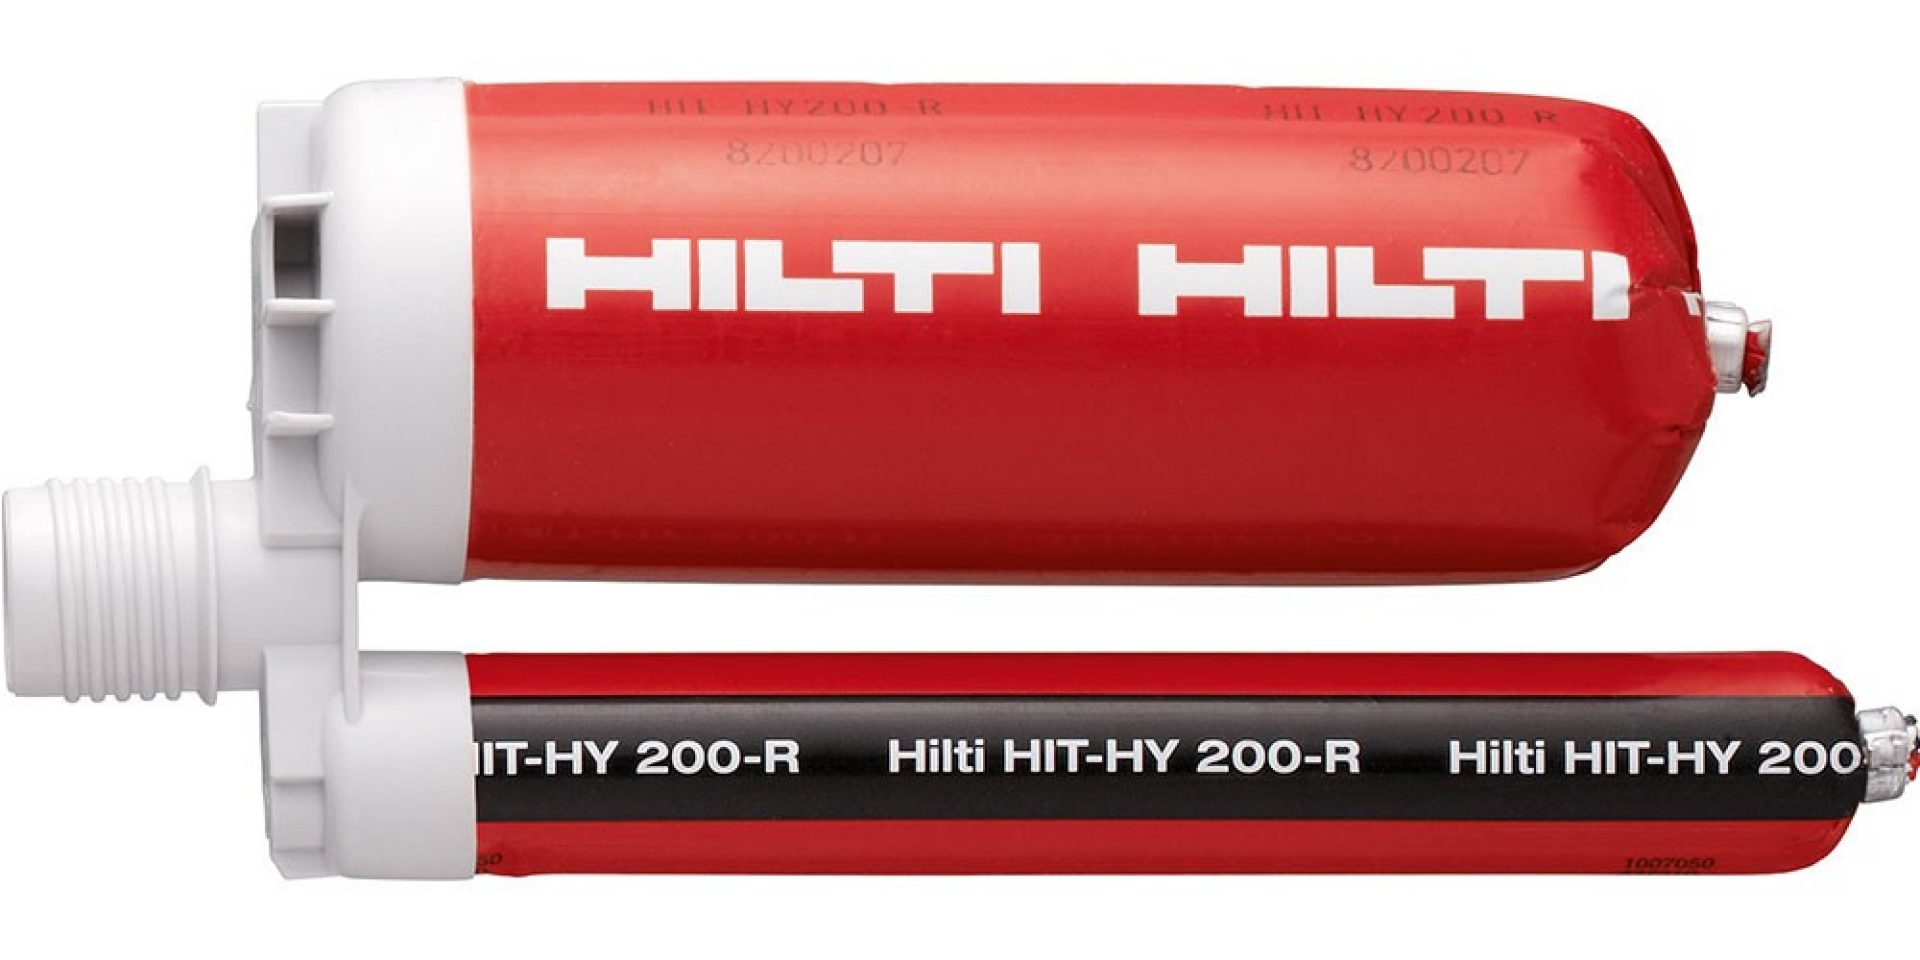 HIT-HY 200-R